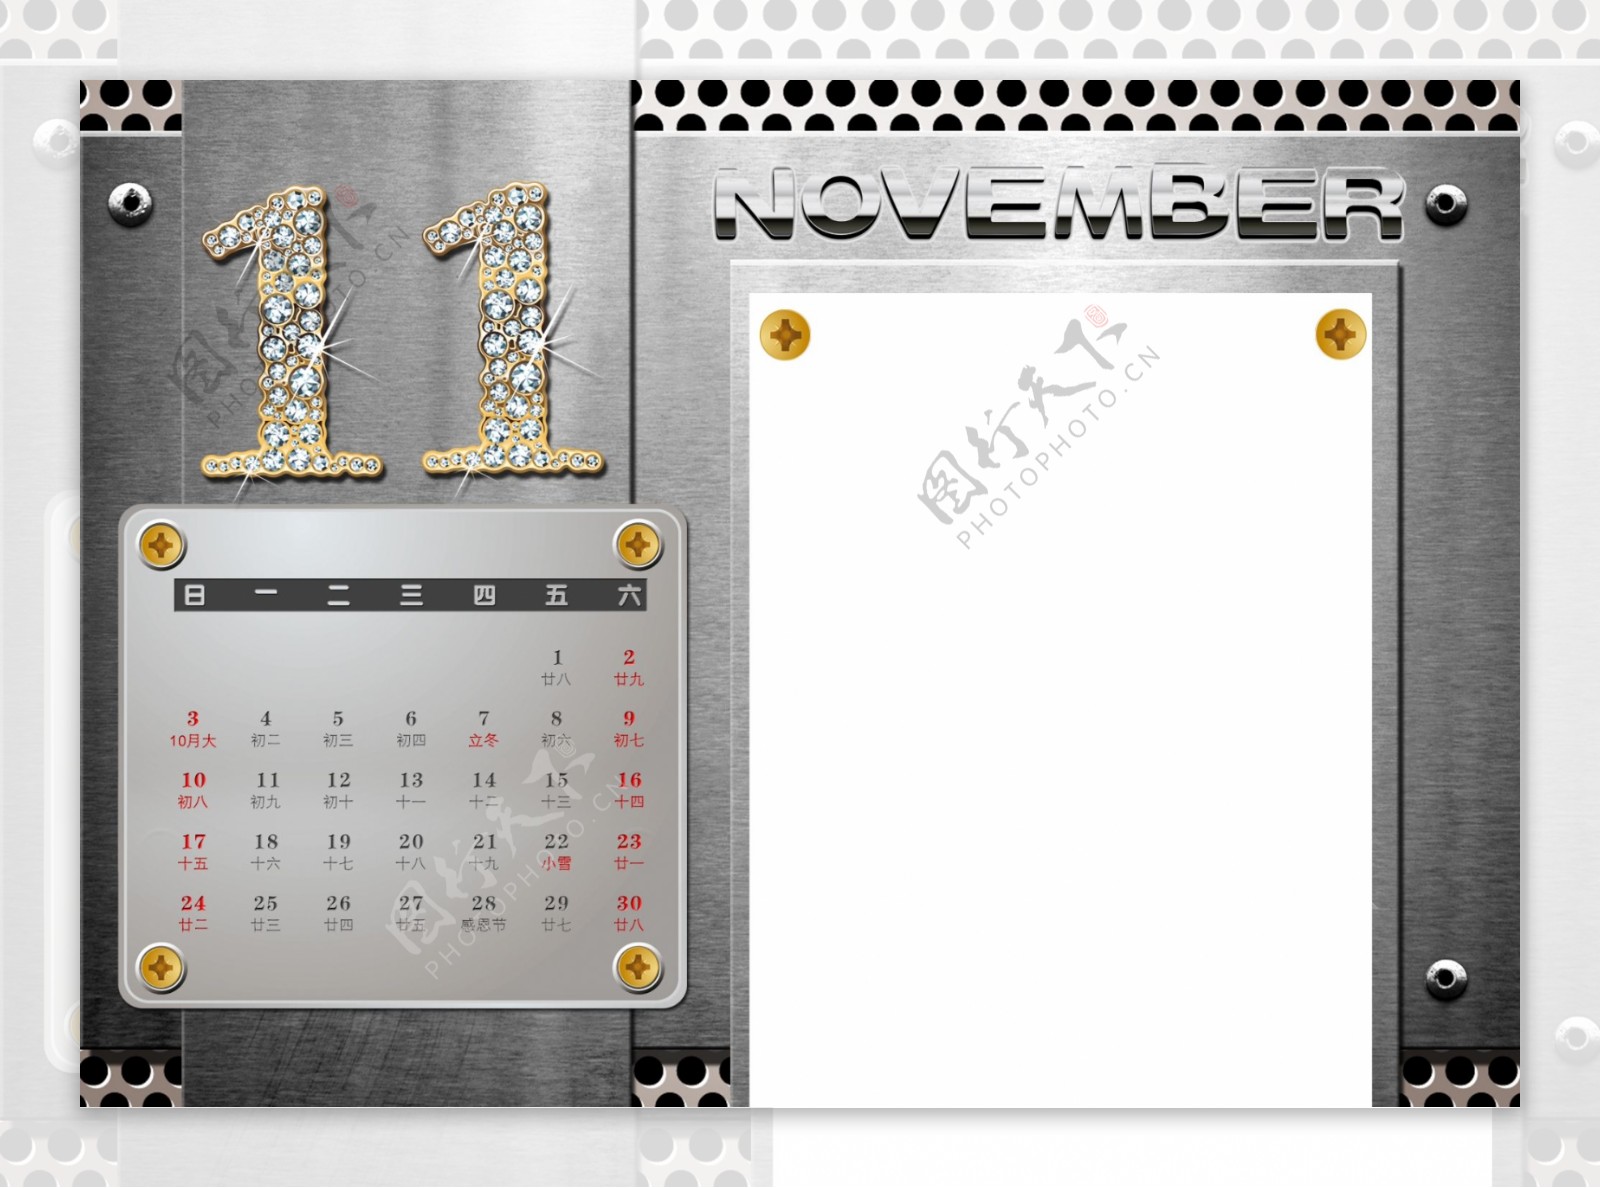 2013年11月日历表